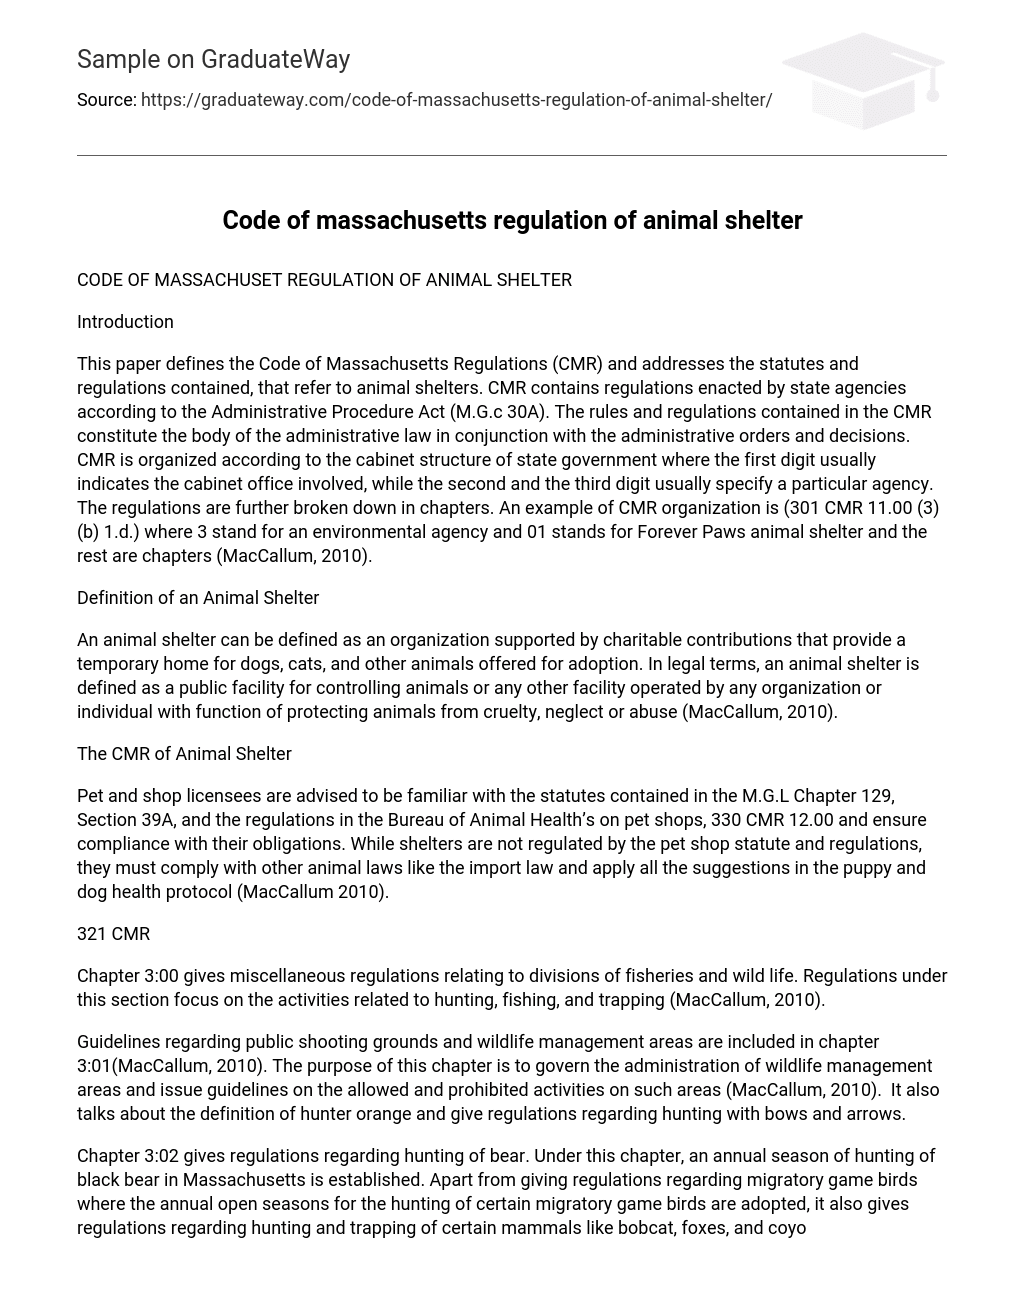 Code of massachusetts regulation of animal shelter